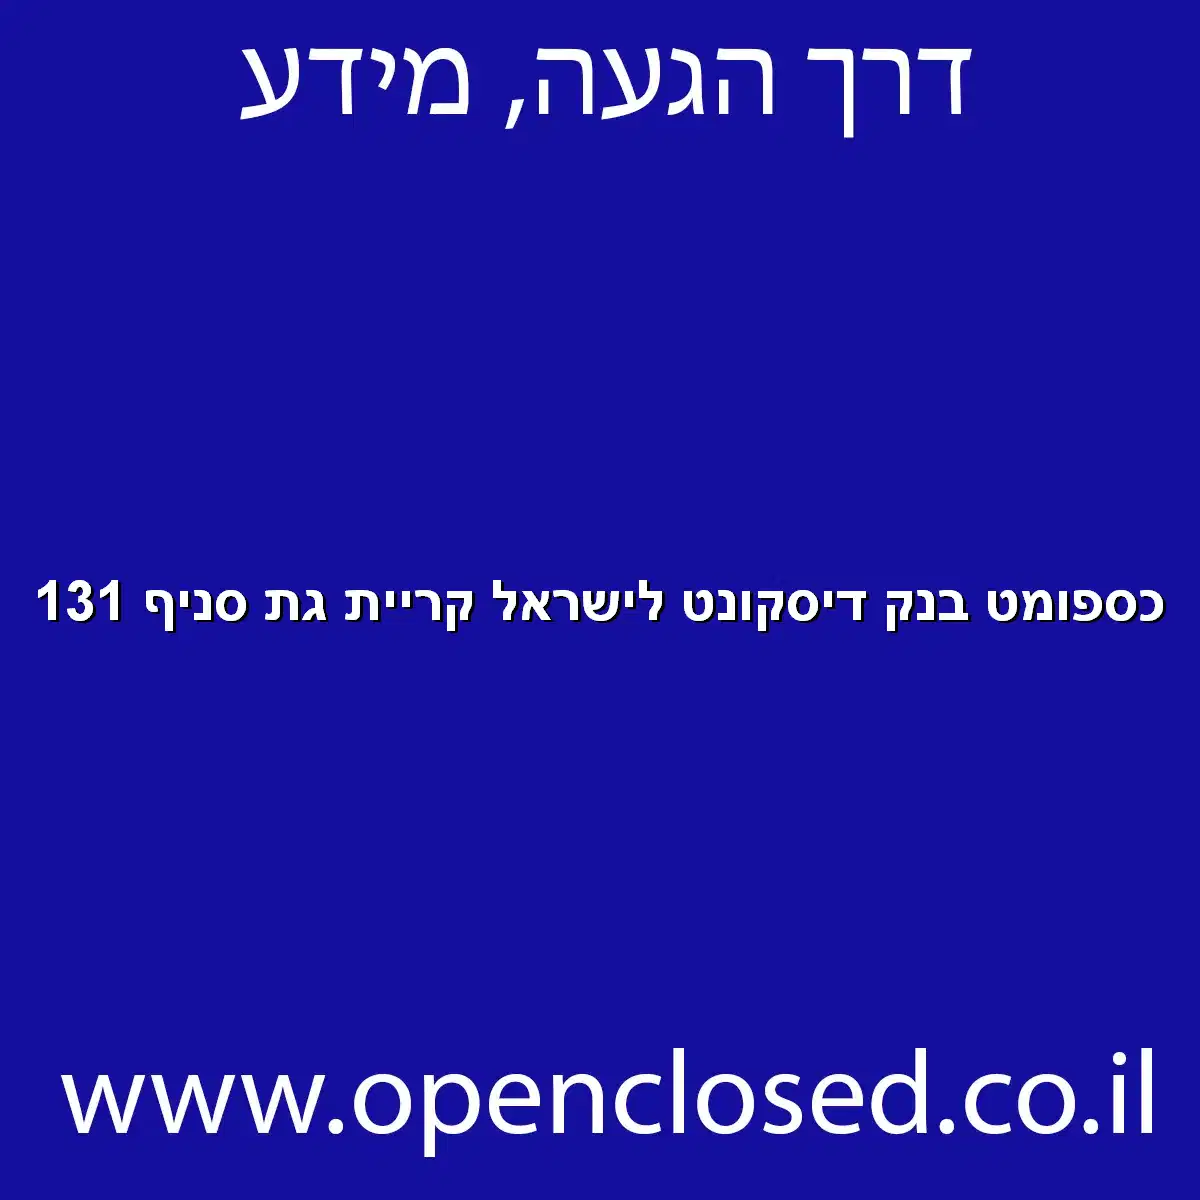 כספומט בנק דיסקונט לישראל קריית גת סניף 131